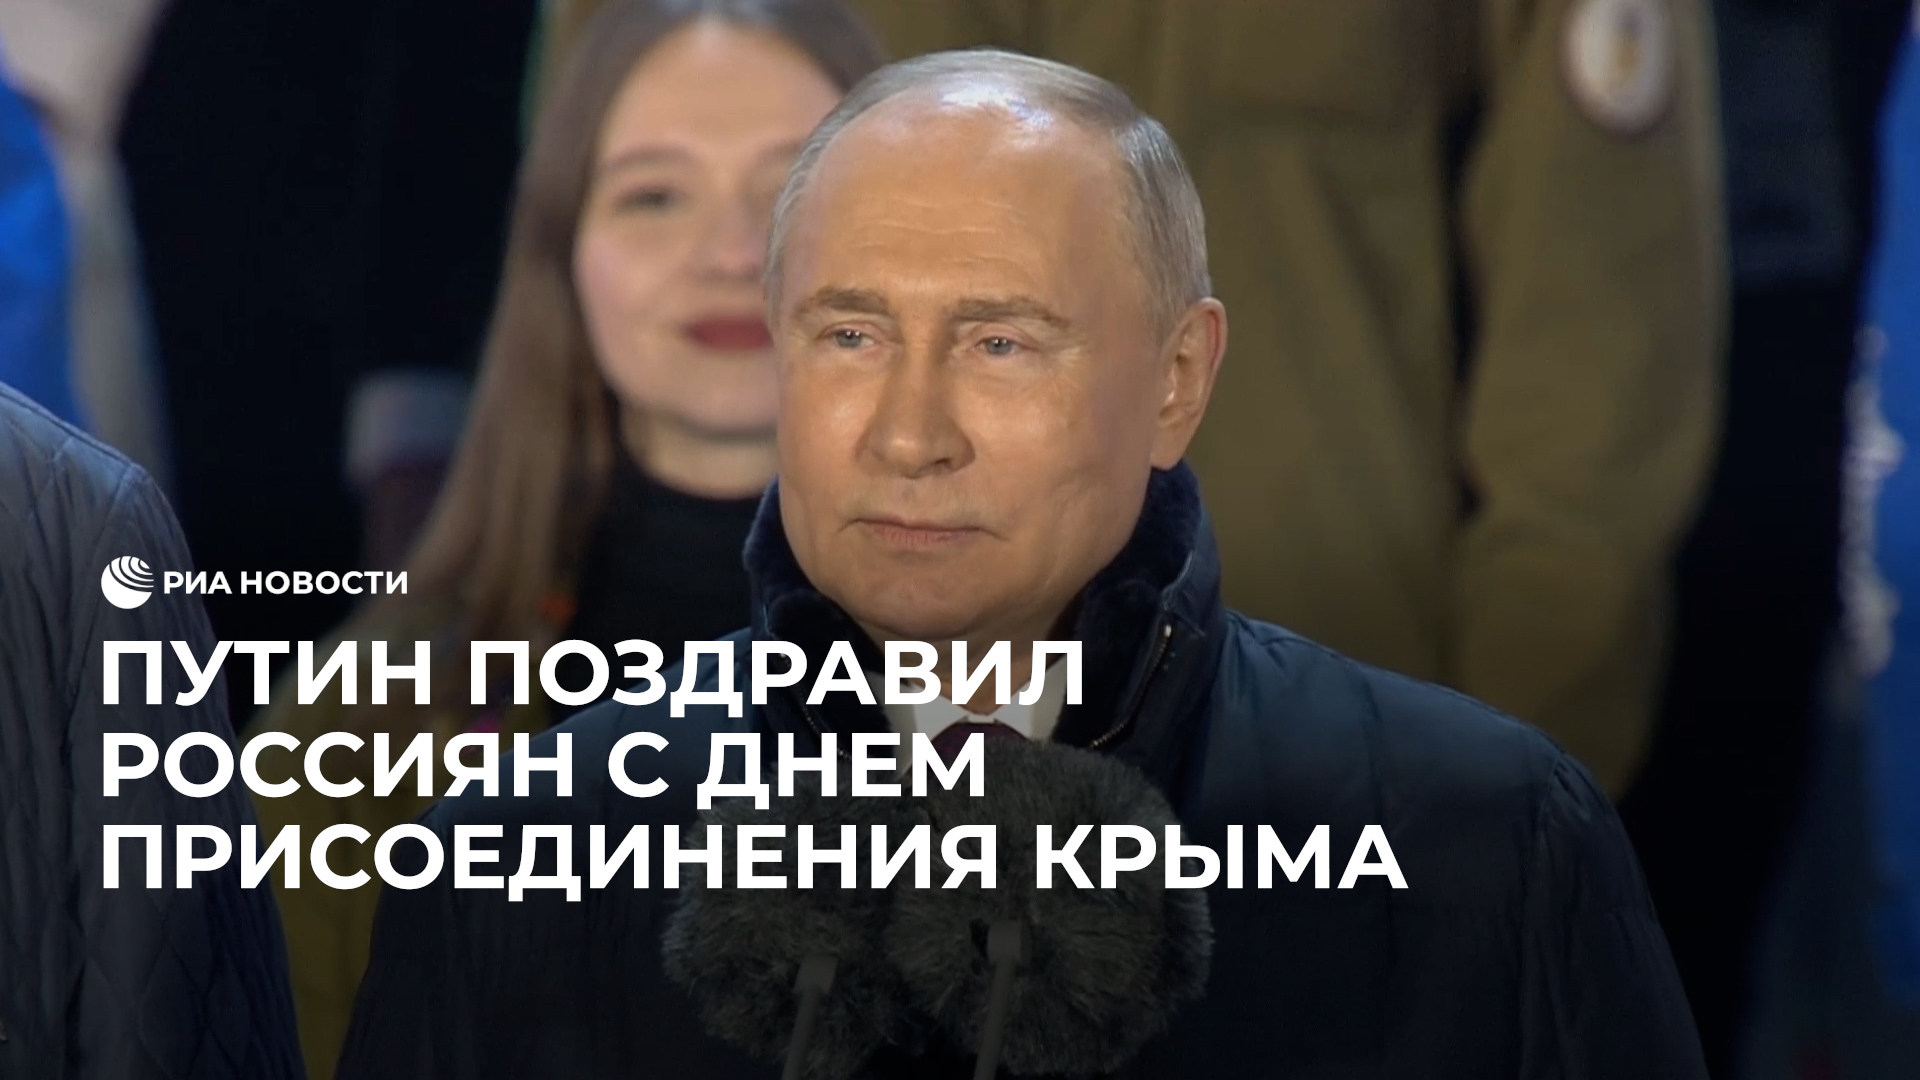 Путин поздравил россиян с днем присоединения Крыма